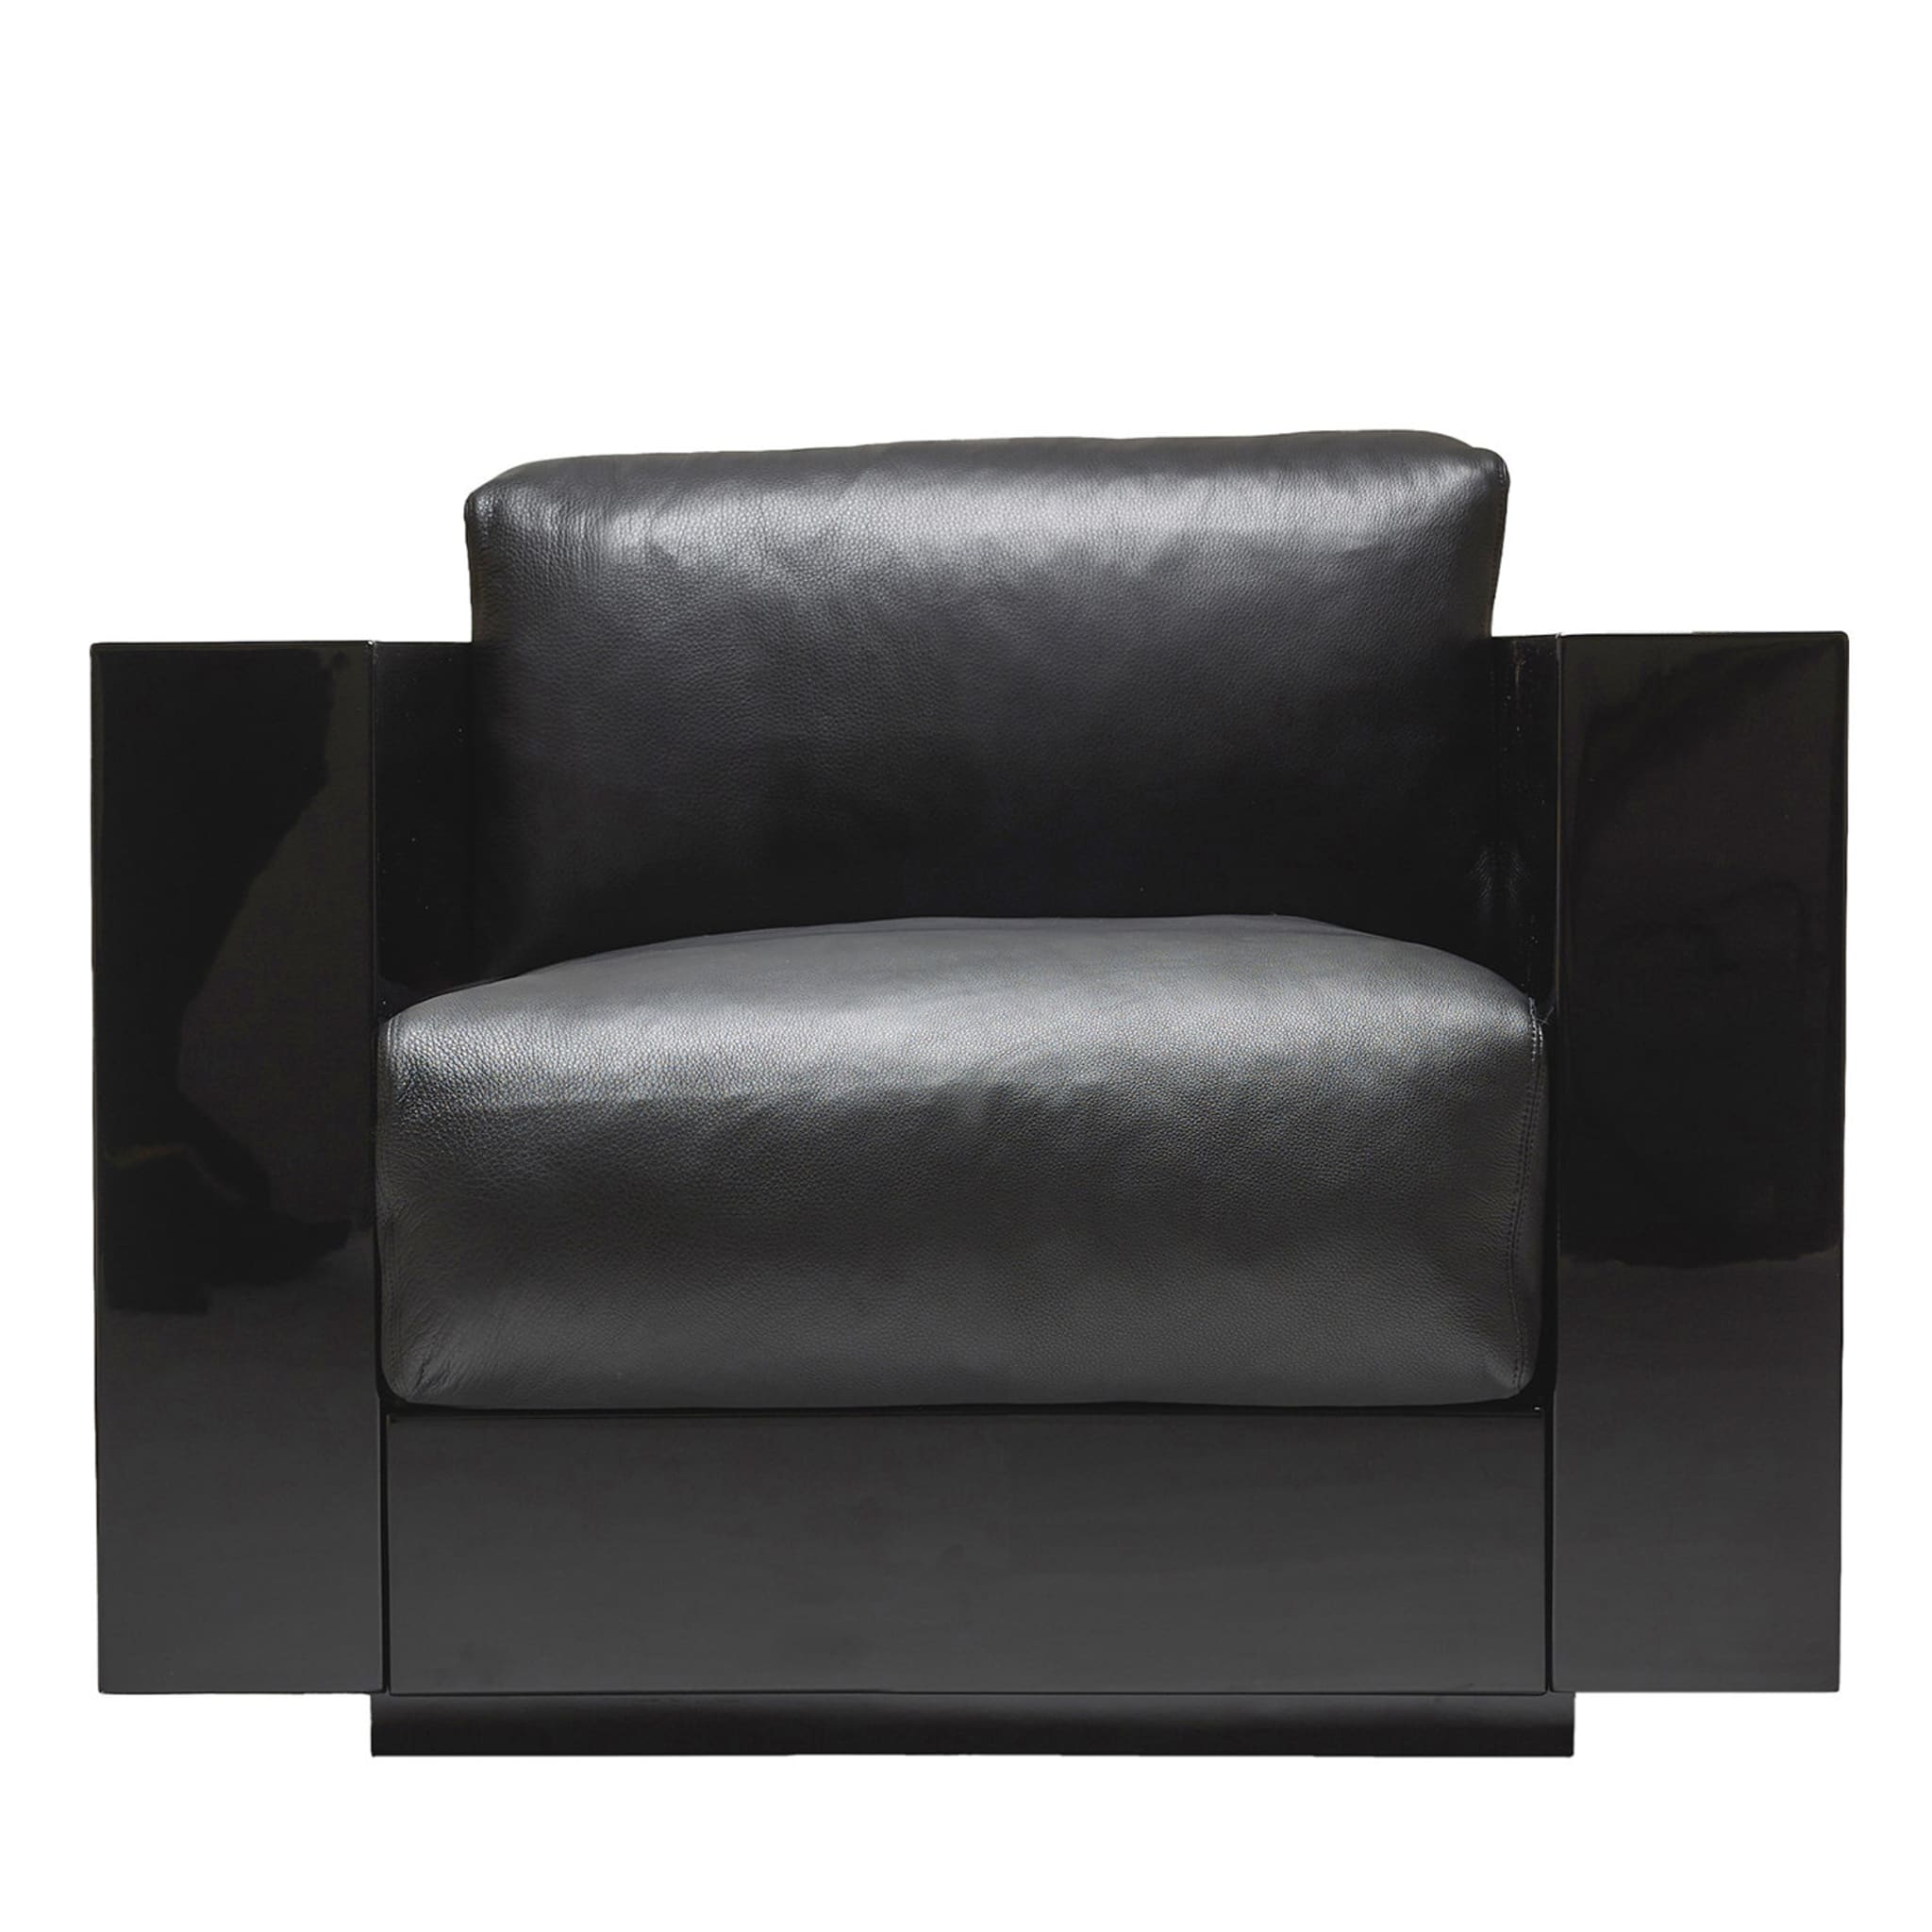 Saratoga Schwarzer Sessel von Lella und Massimo Vignelli - Hauptansicht